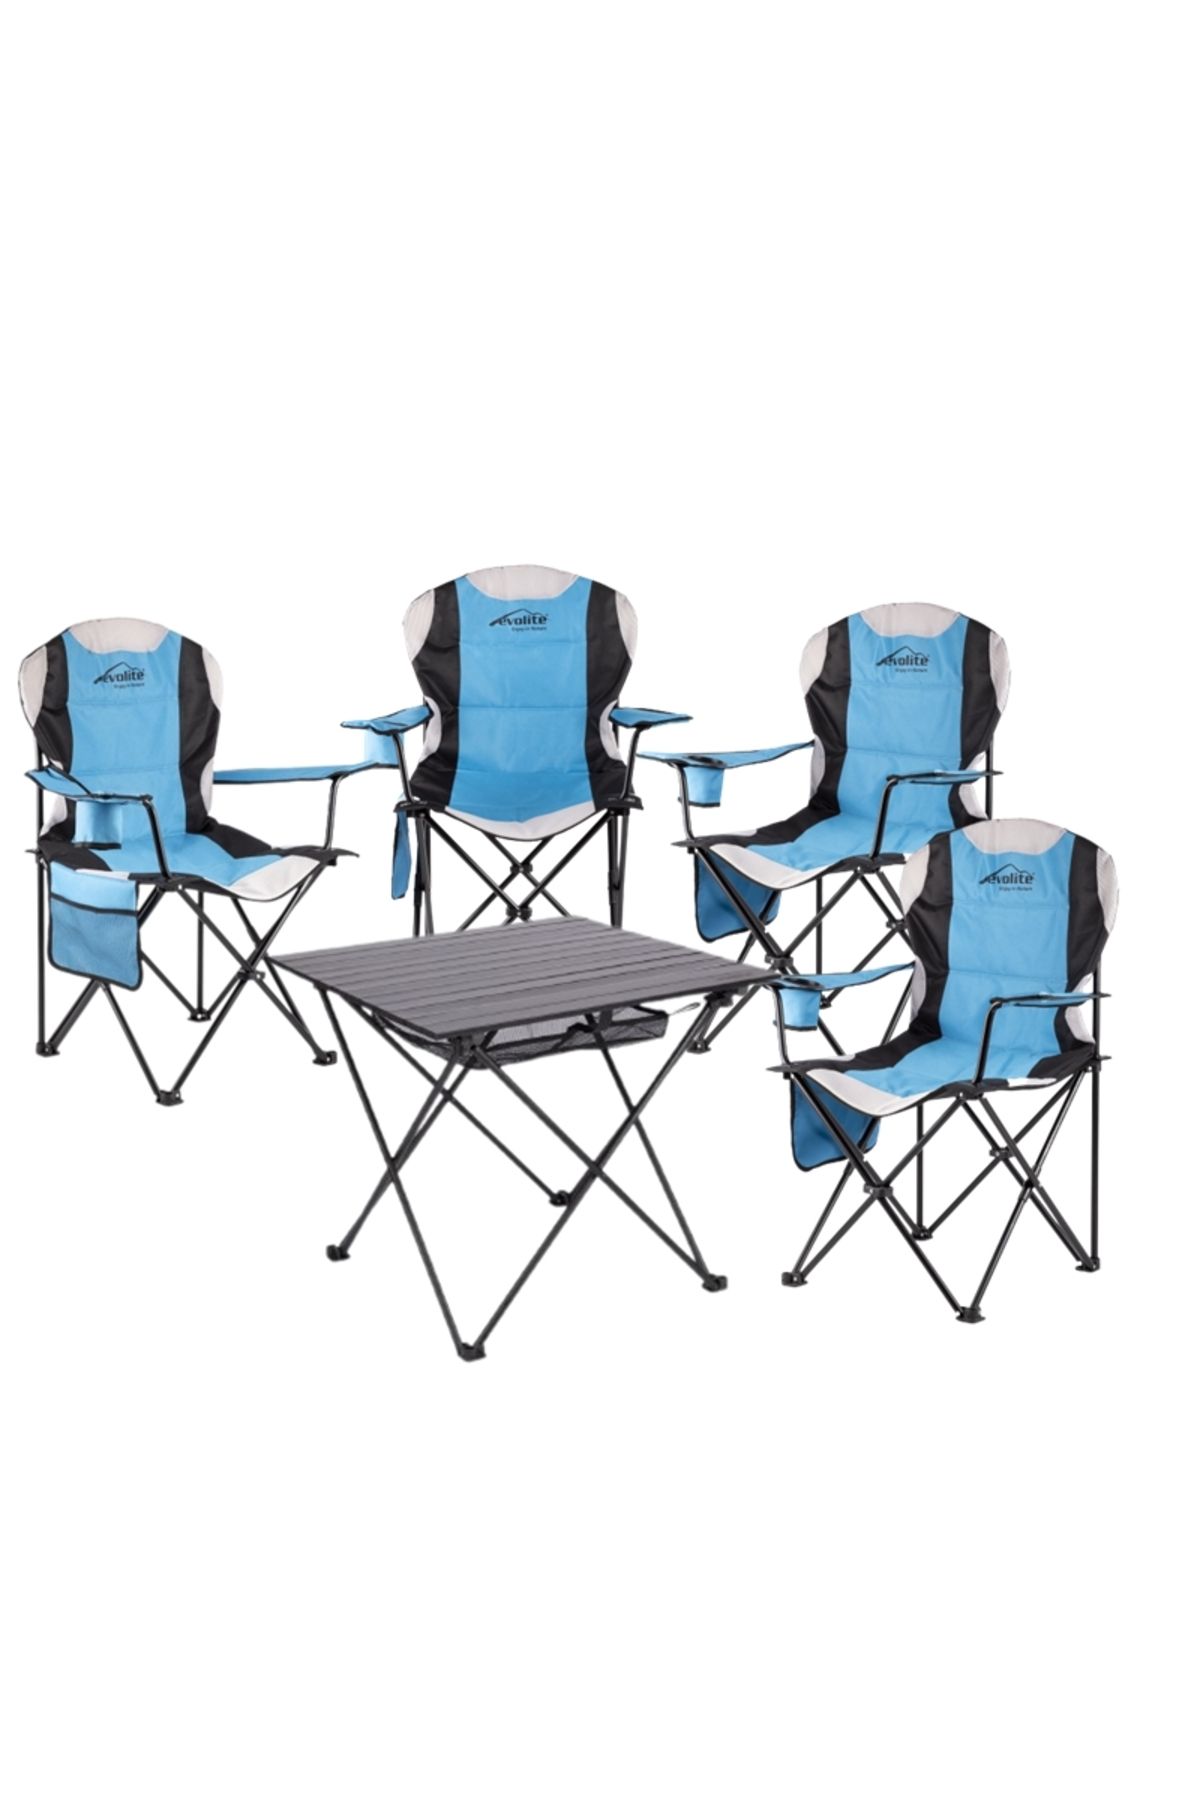 gaman Evolite Katlanır Kamp Masası + 4 Adet Evolite Katlanır Kamp Sandalyesi Bahçe Balkon Piknik Takımı